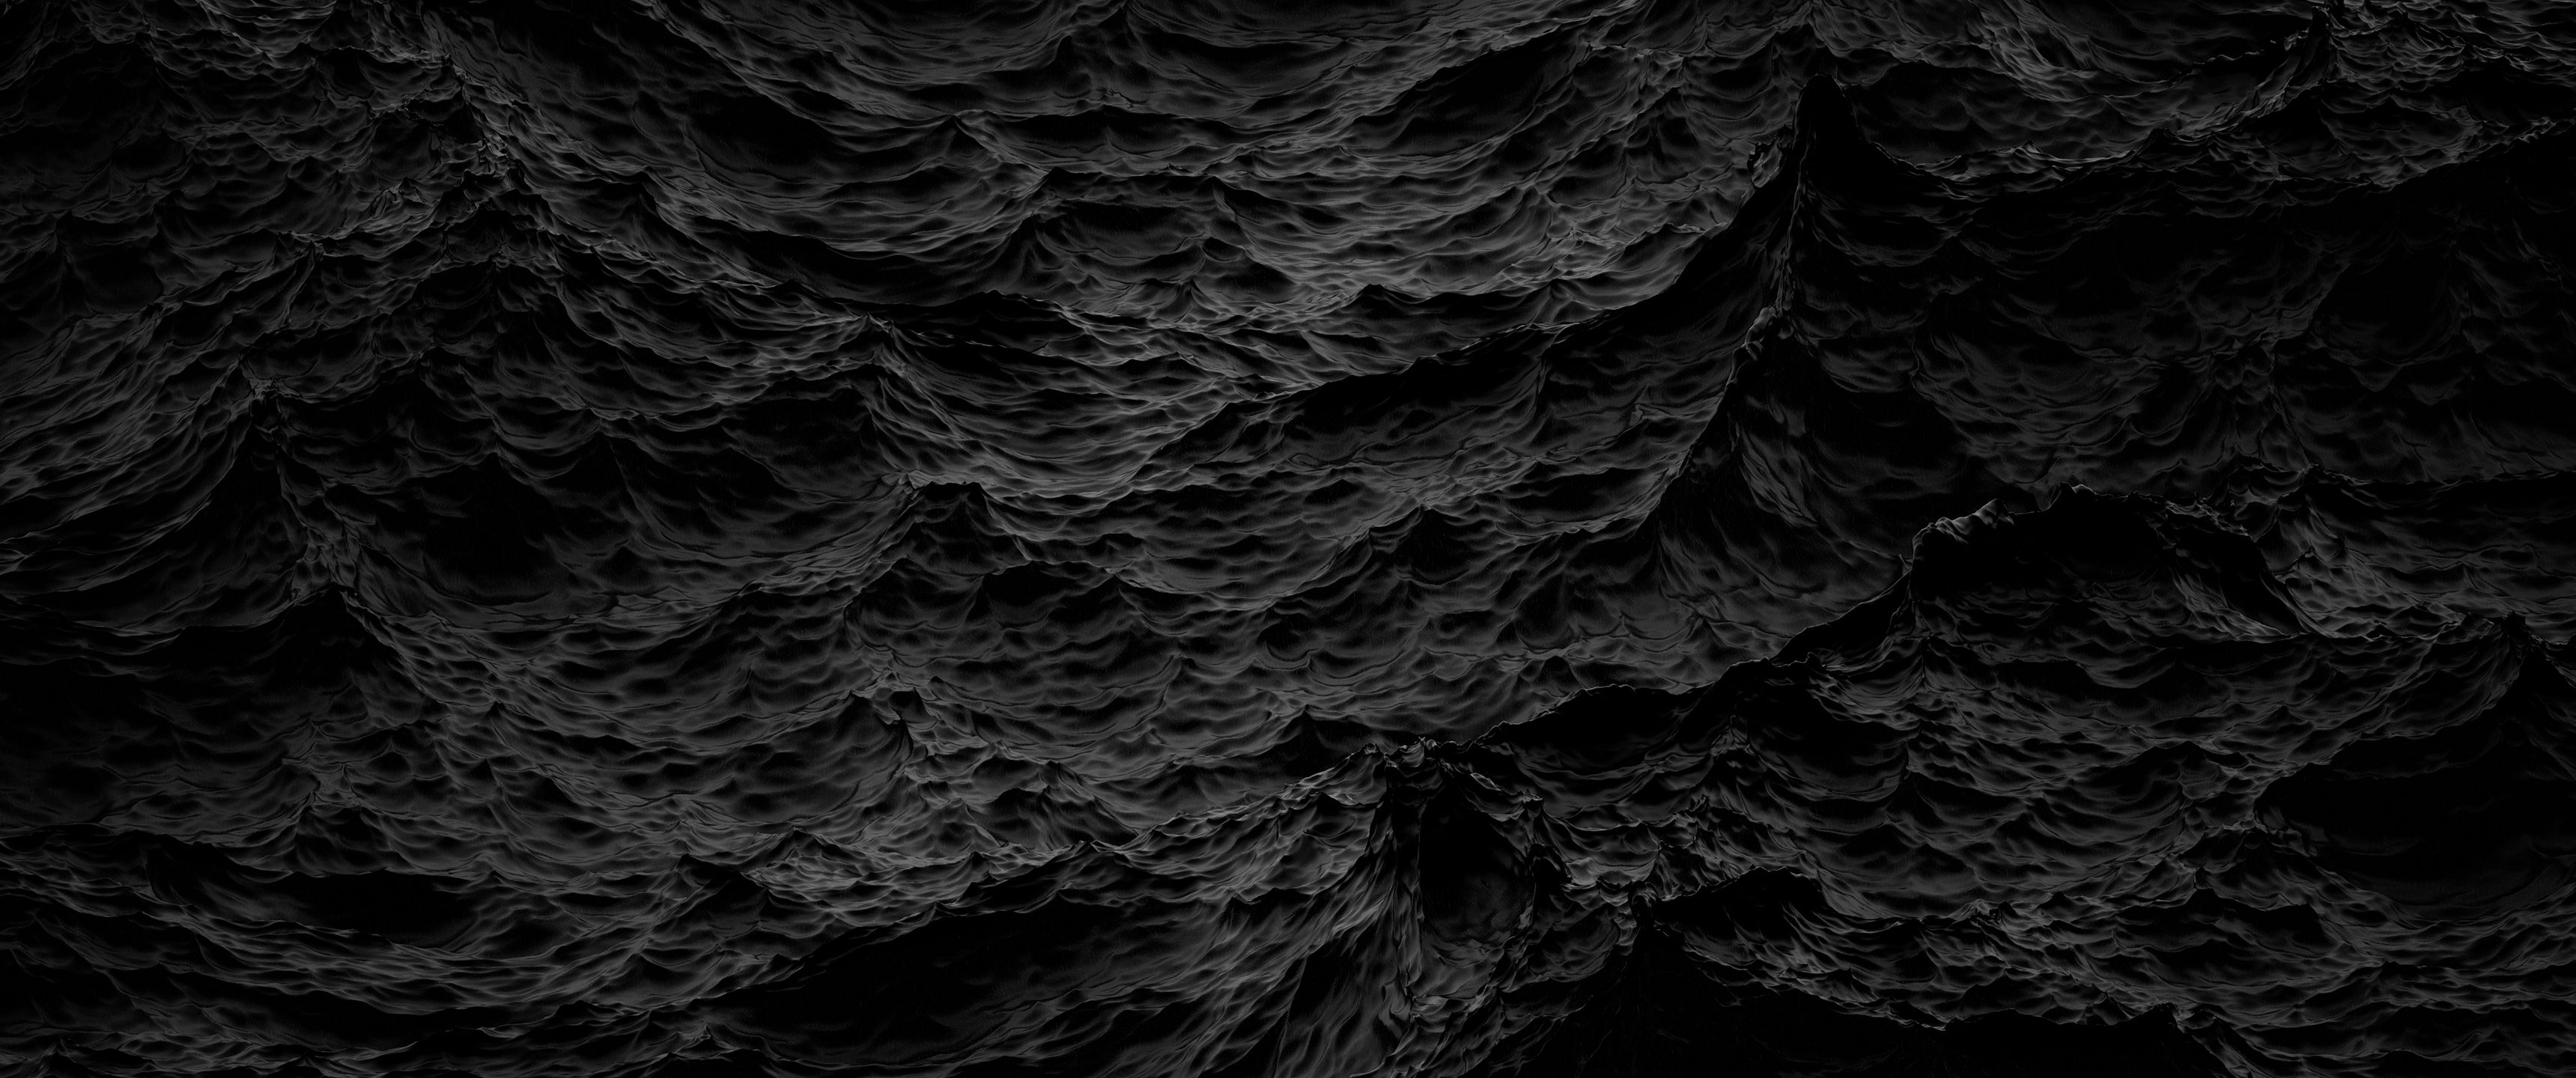 Black Ocean Wallpapers - Wallpaper Cave